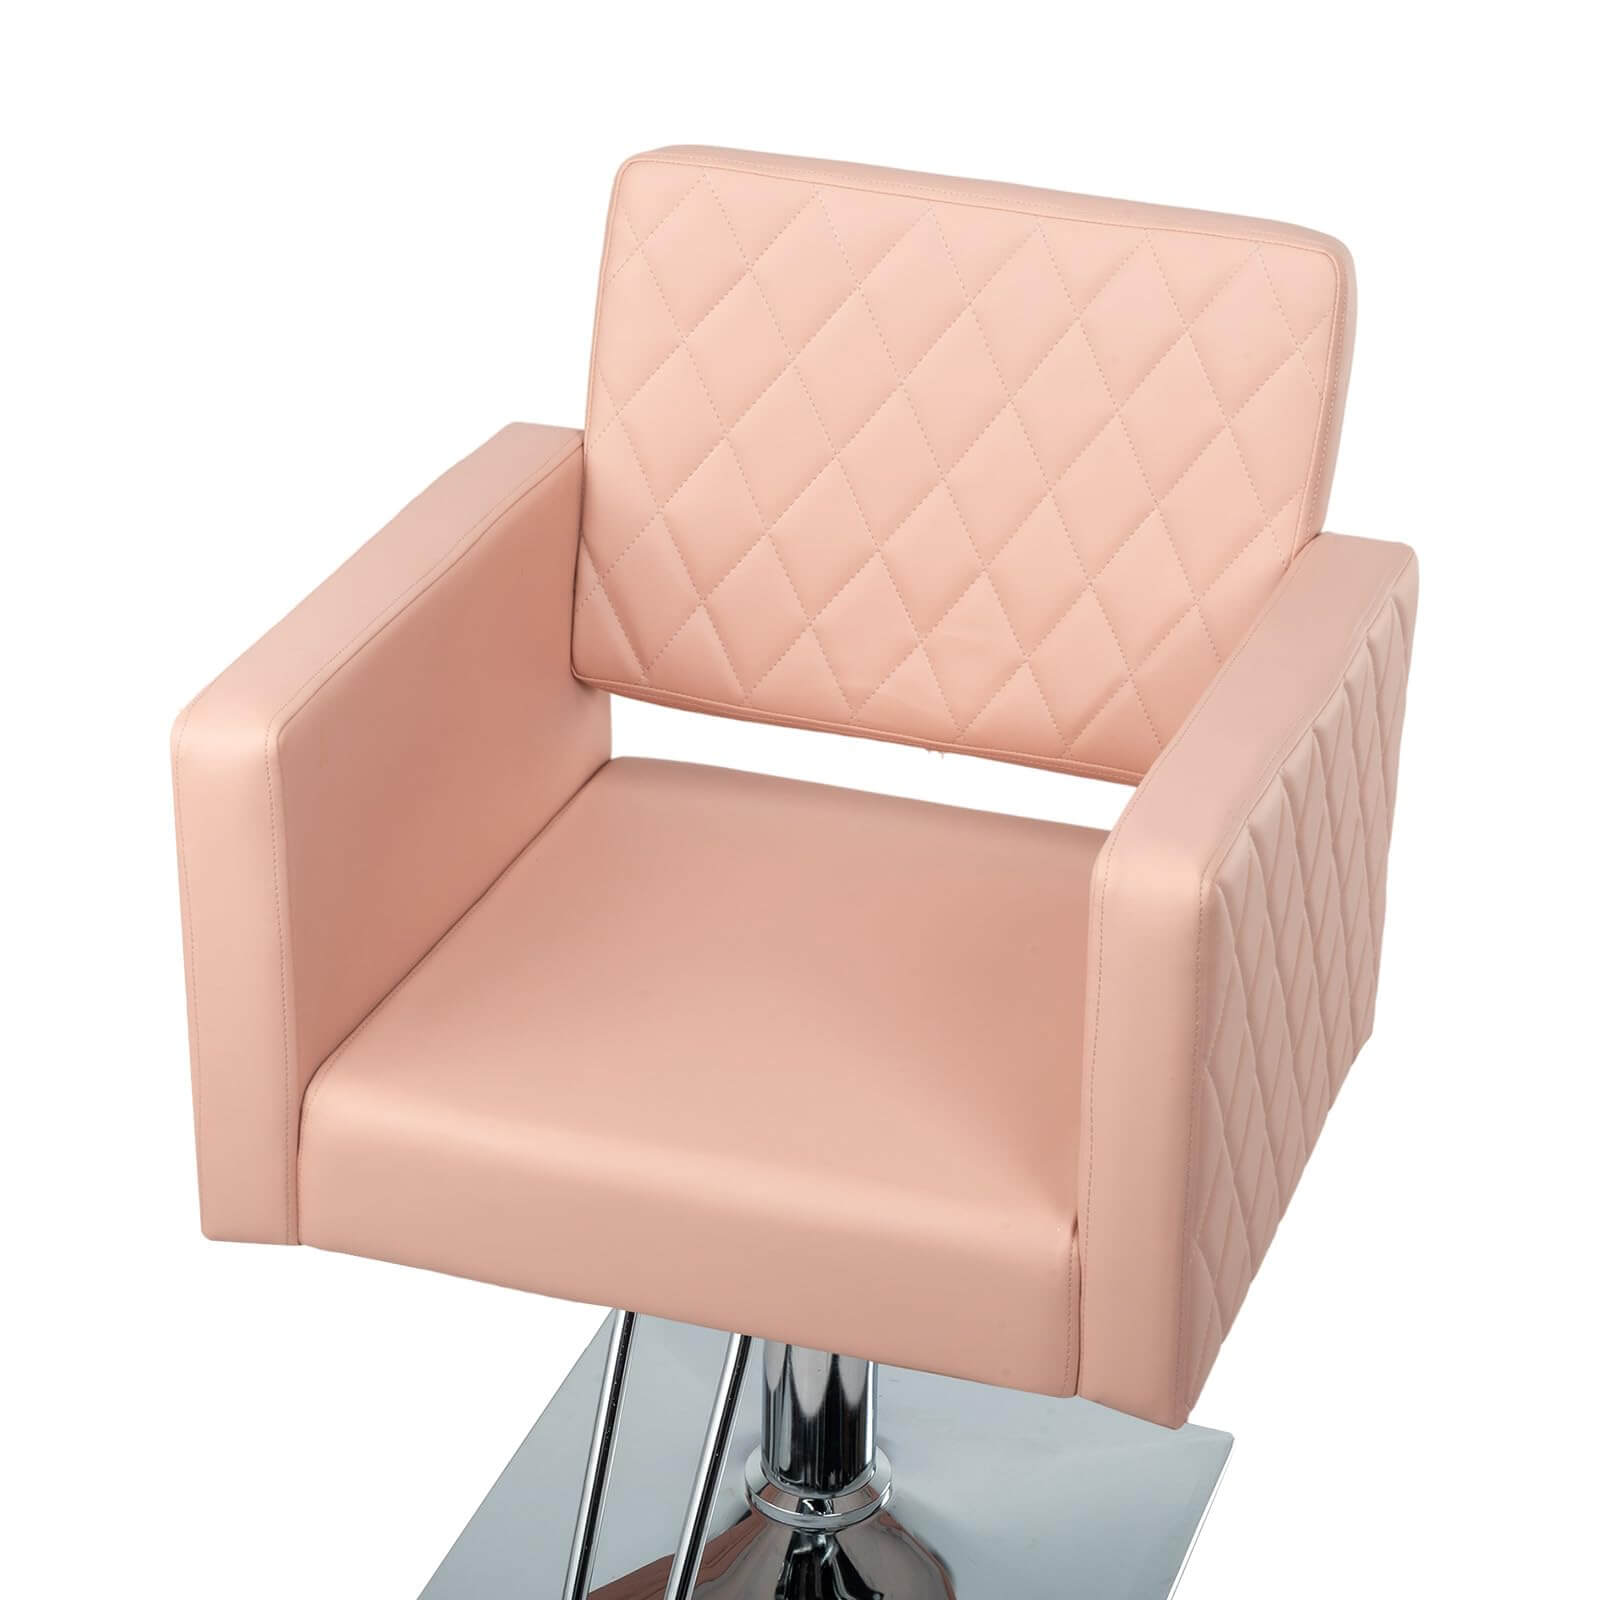 OmySalon SC2001 Heavy Duty Hydraulic Wide Seat Hair Stylist Salon Chair